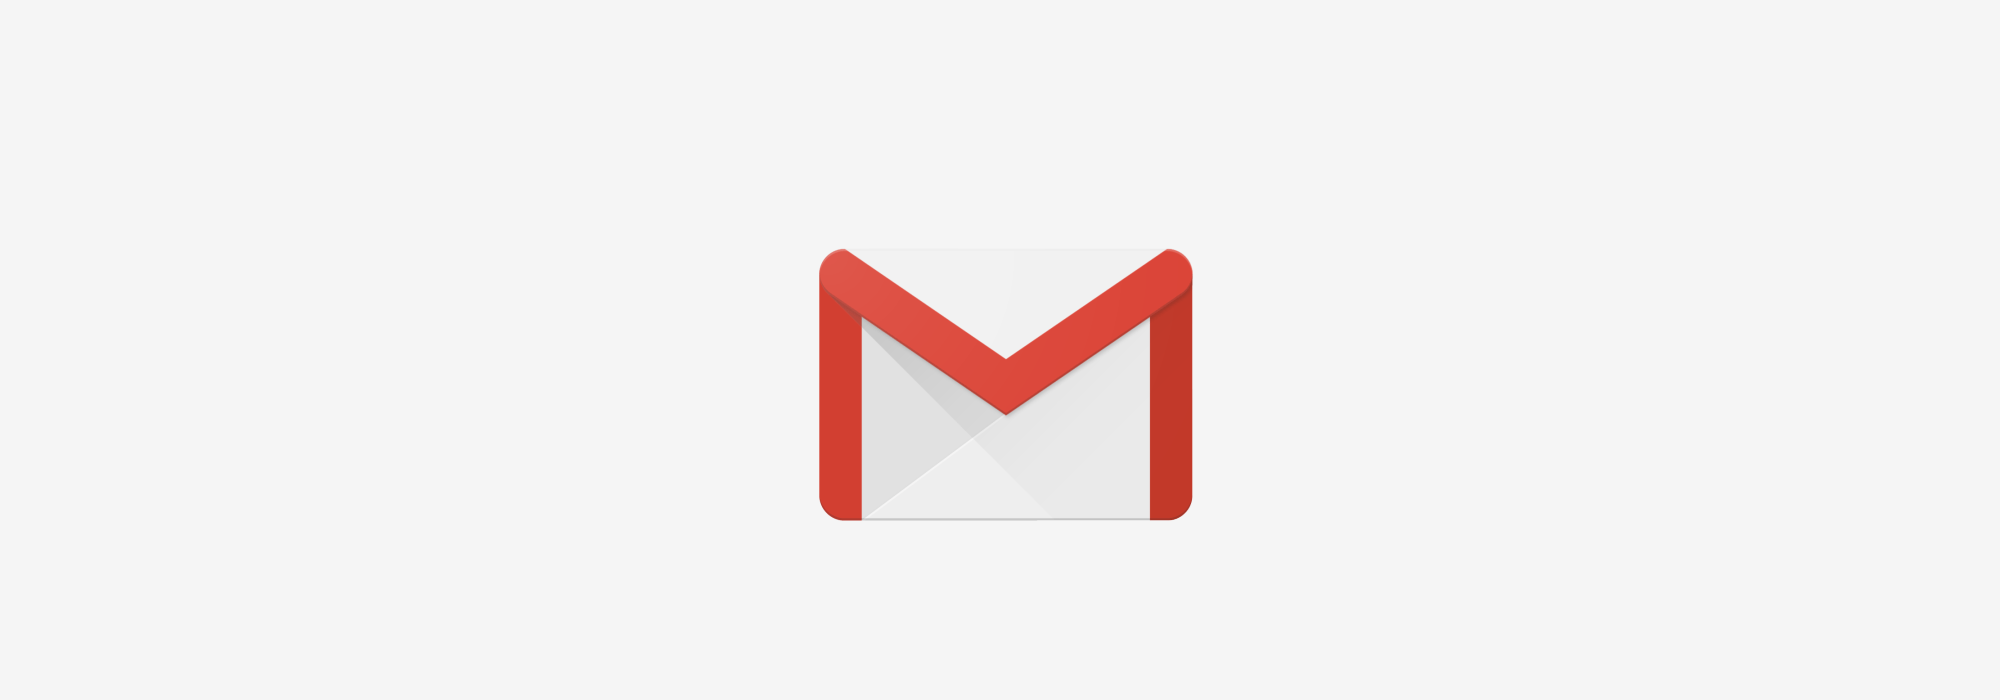 Gmail.com Logo - Inbox